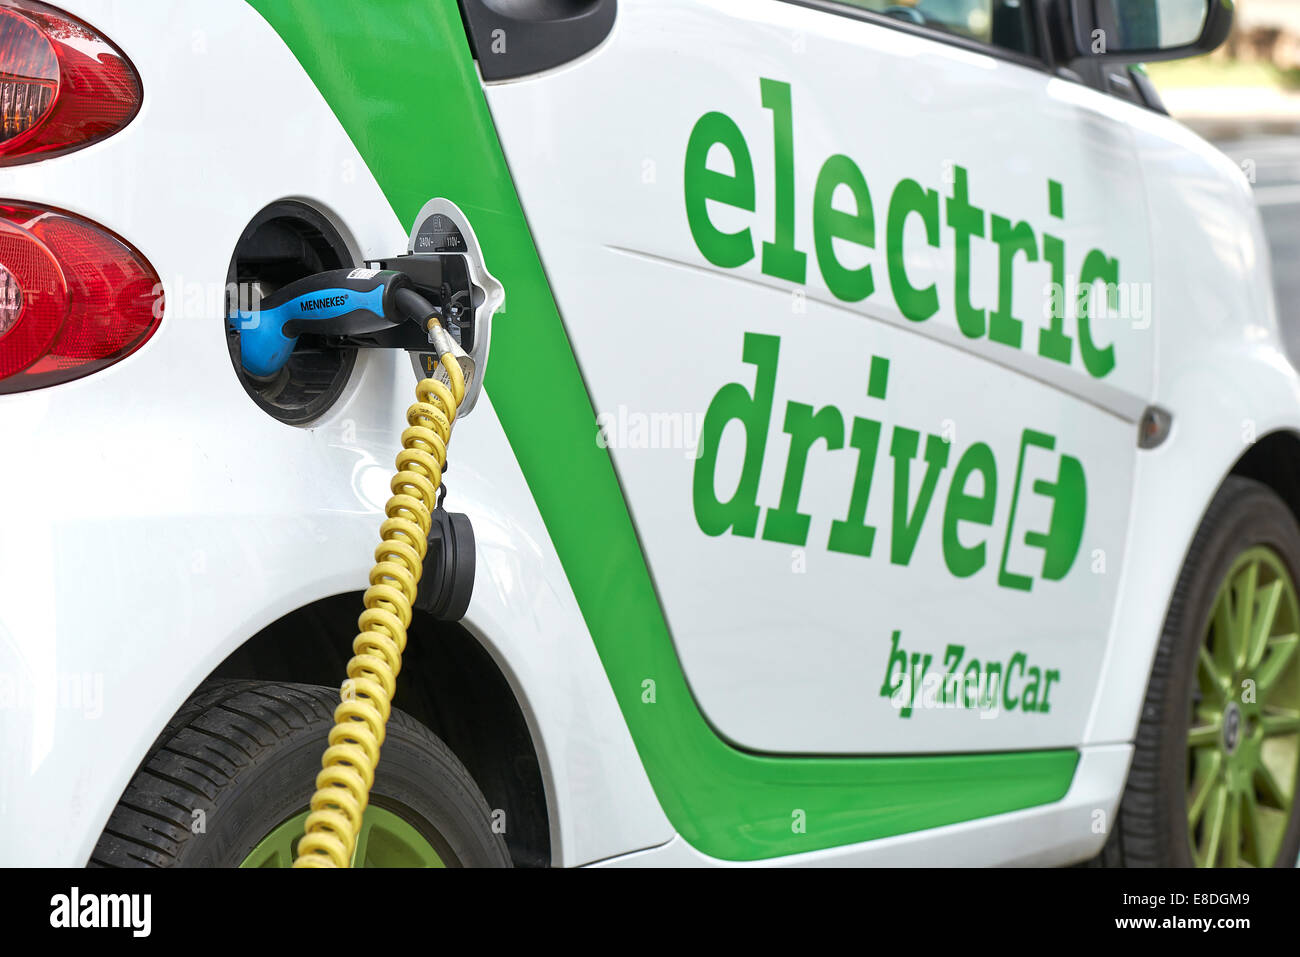 Zen Car Europe la prima macchina elettrica a noleggio su Bld Botanique Foto Stock